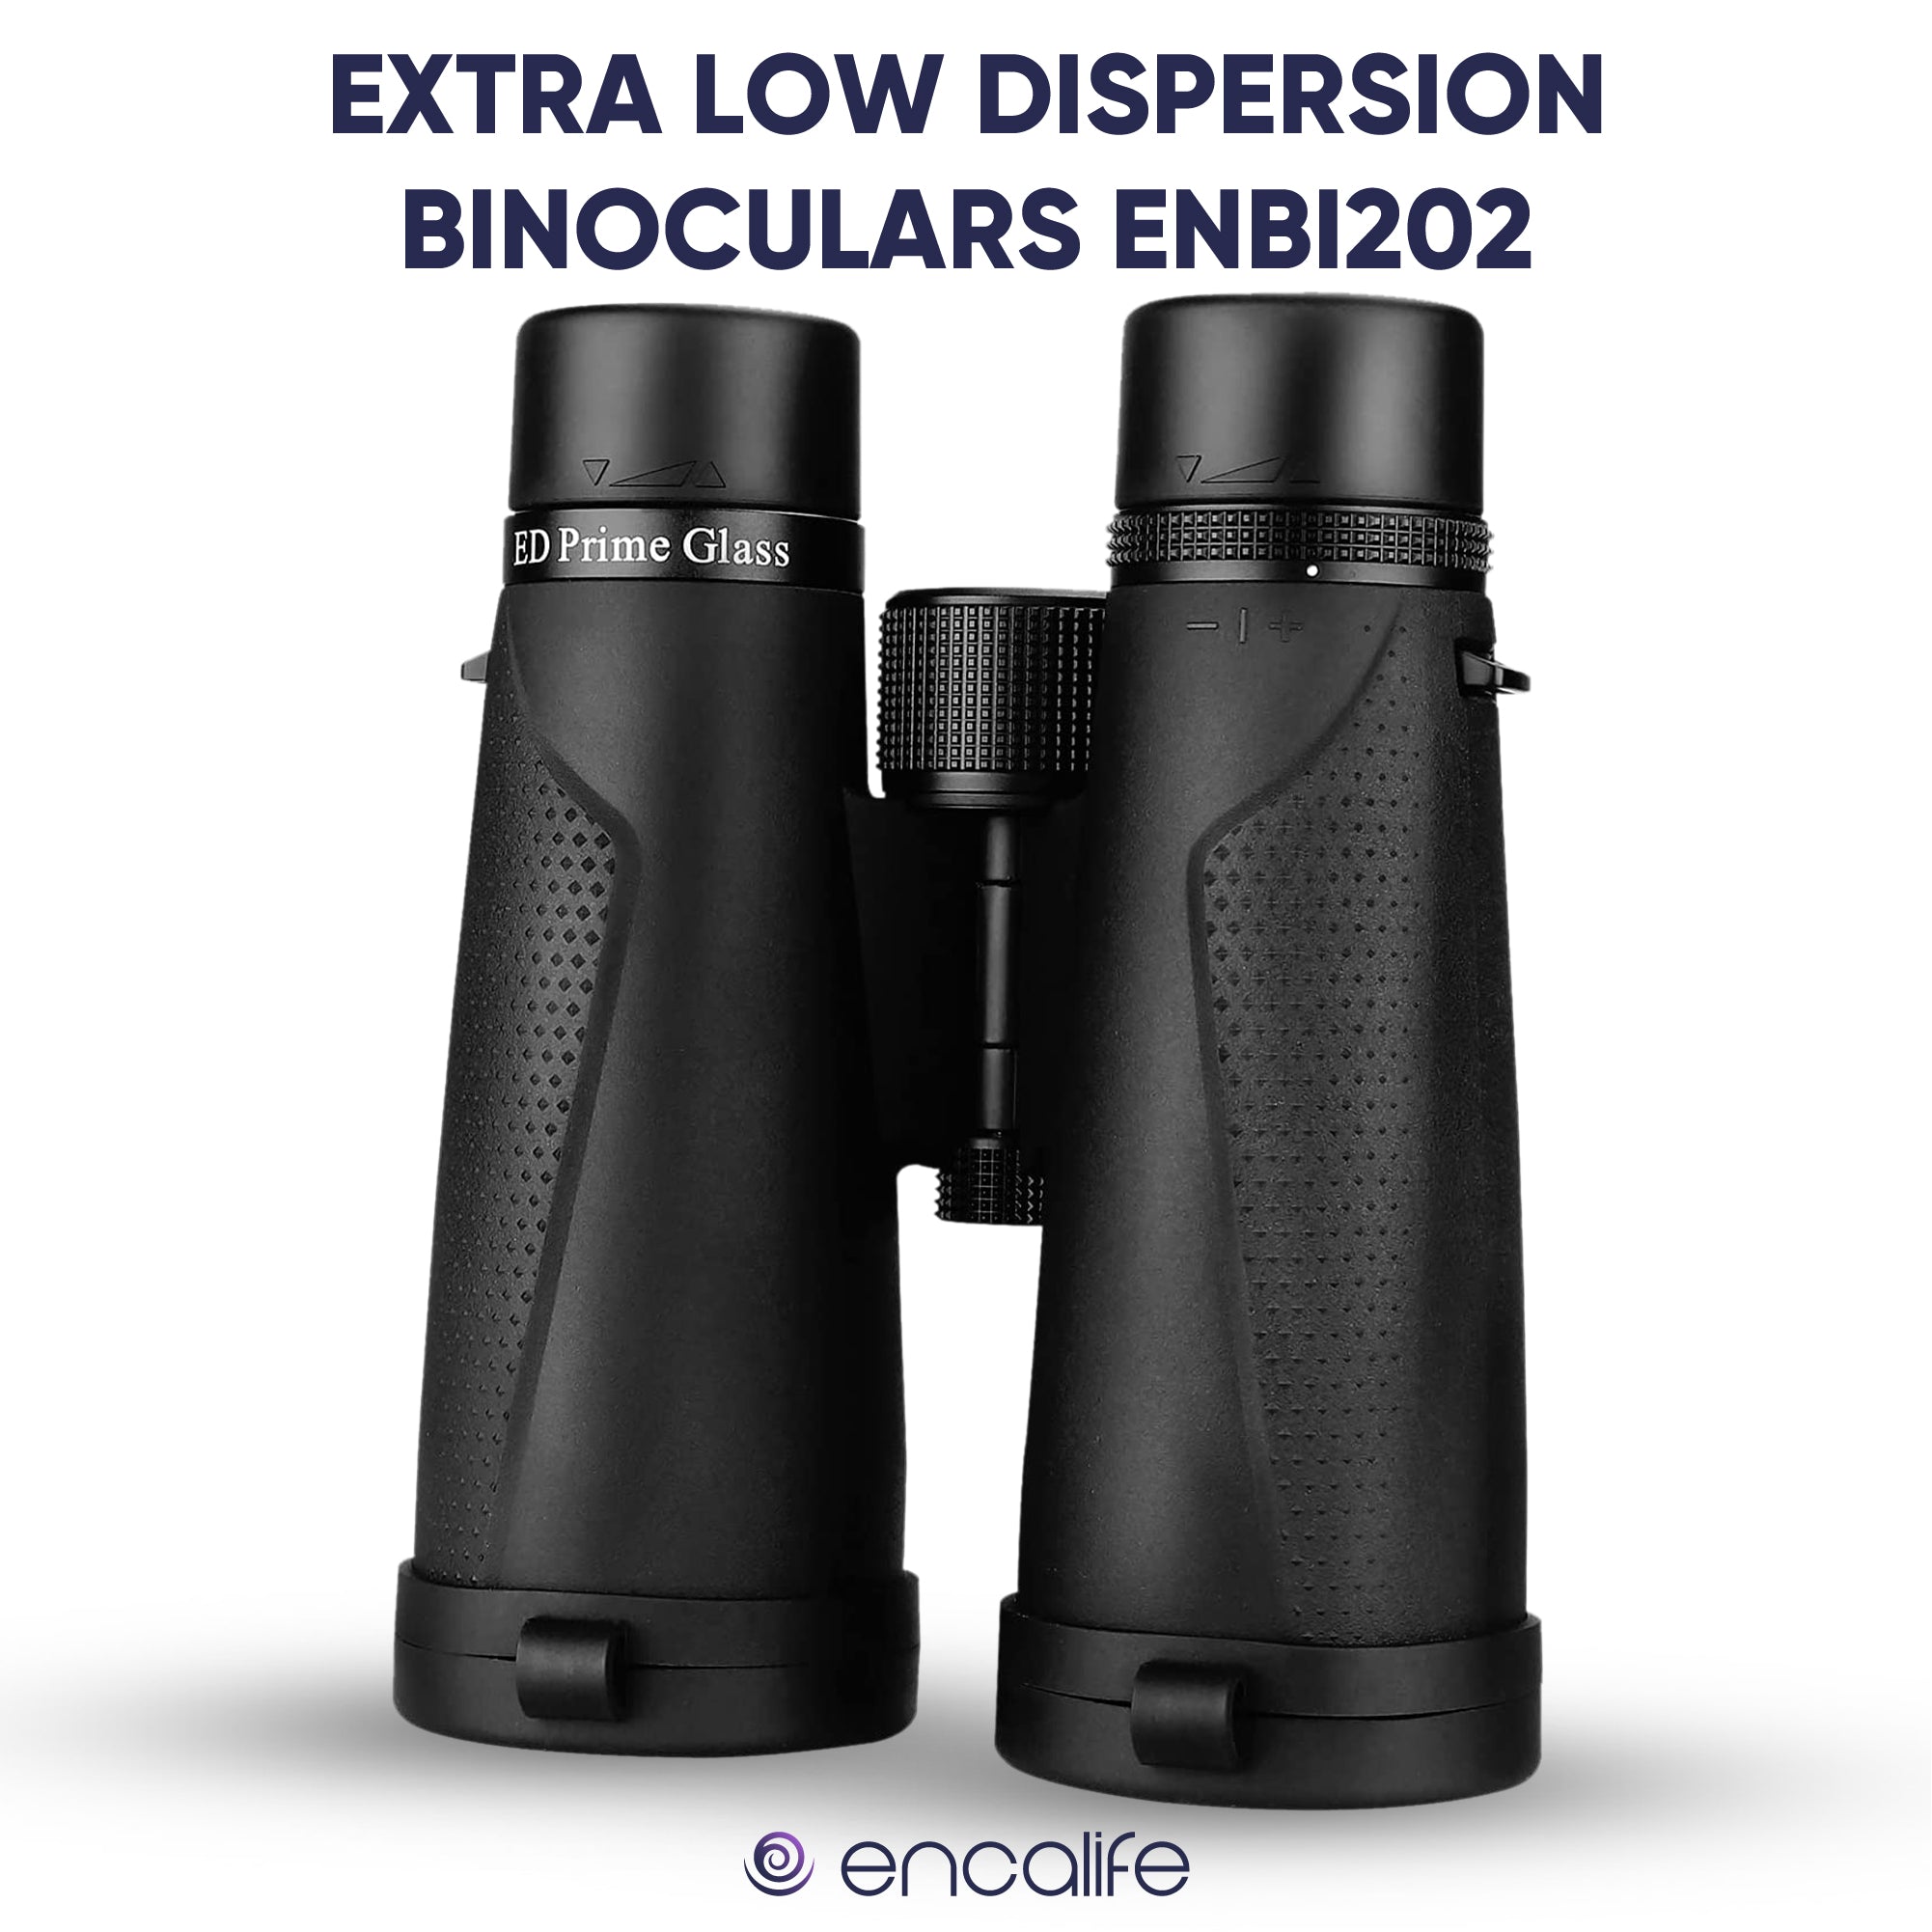 Extra-Low Dispersion Binoculars | ENBI202